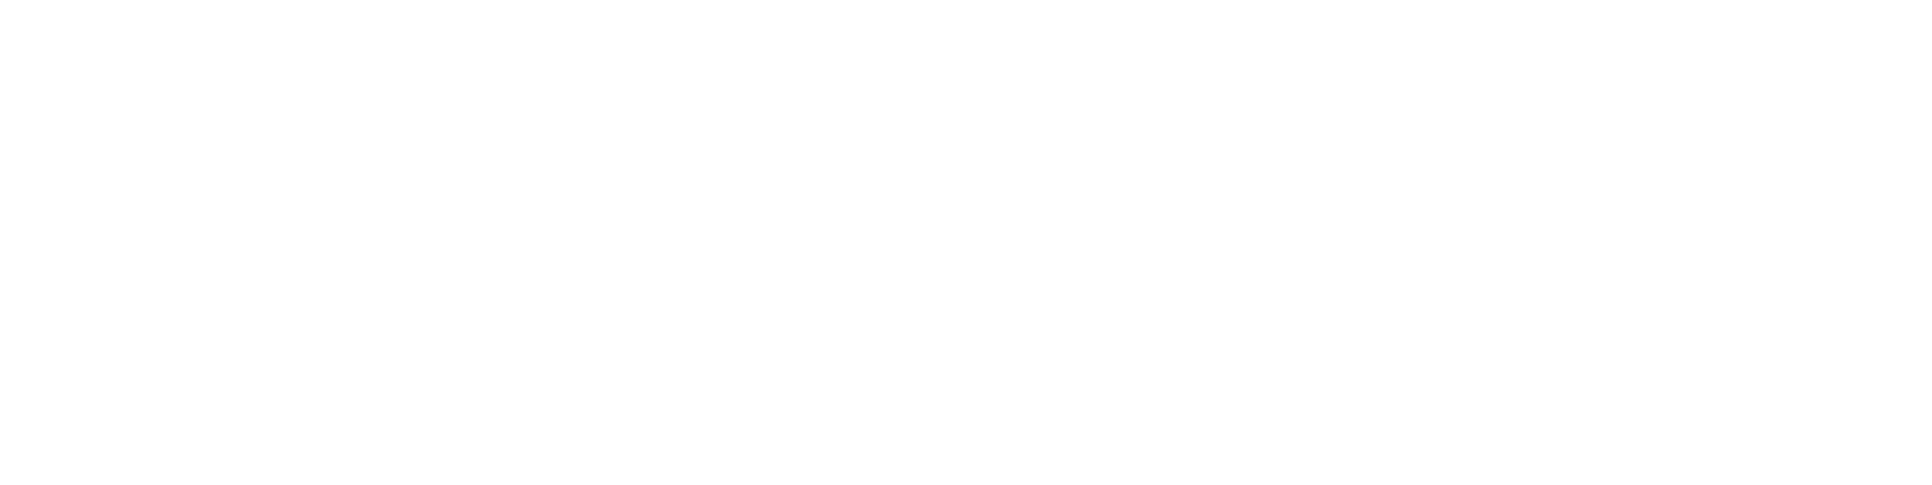 LIT DE CAMP PICOT - New Kaki - Surplus Militaire Gap